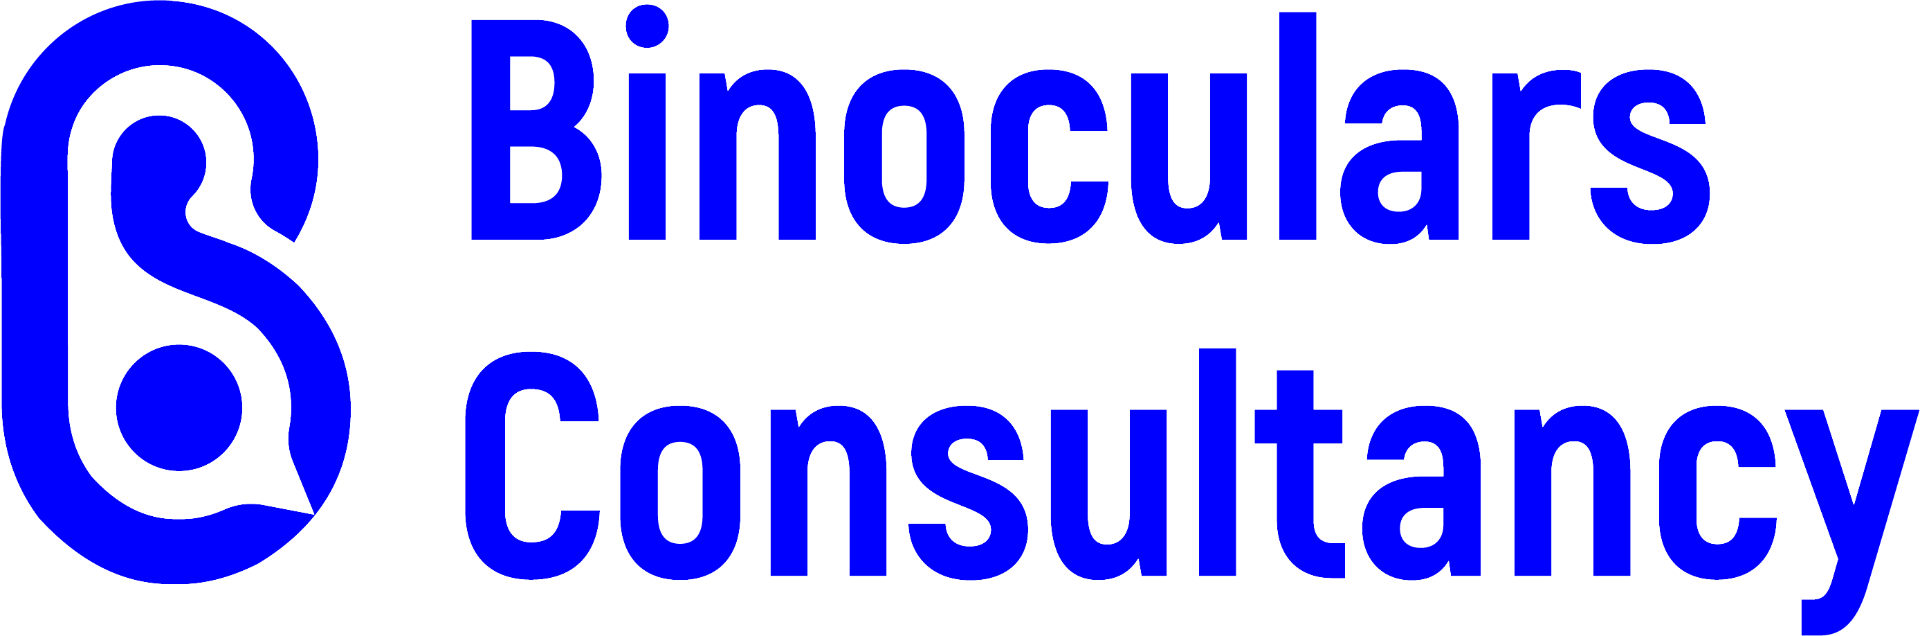 Binoculars Consultancy logo